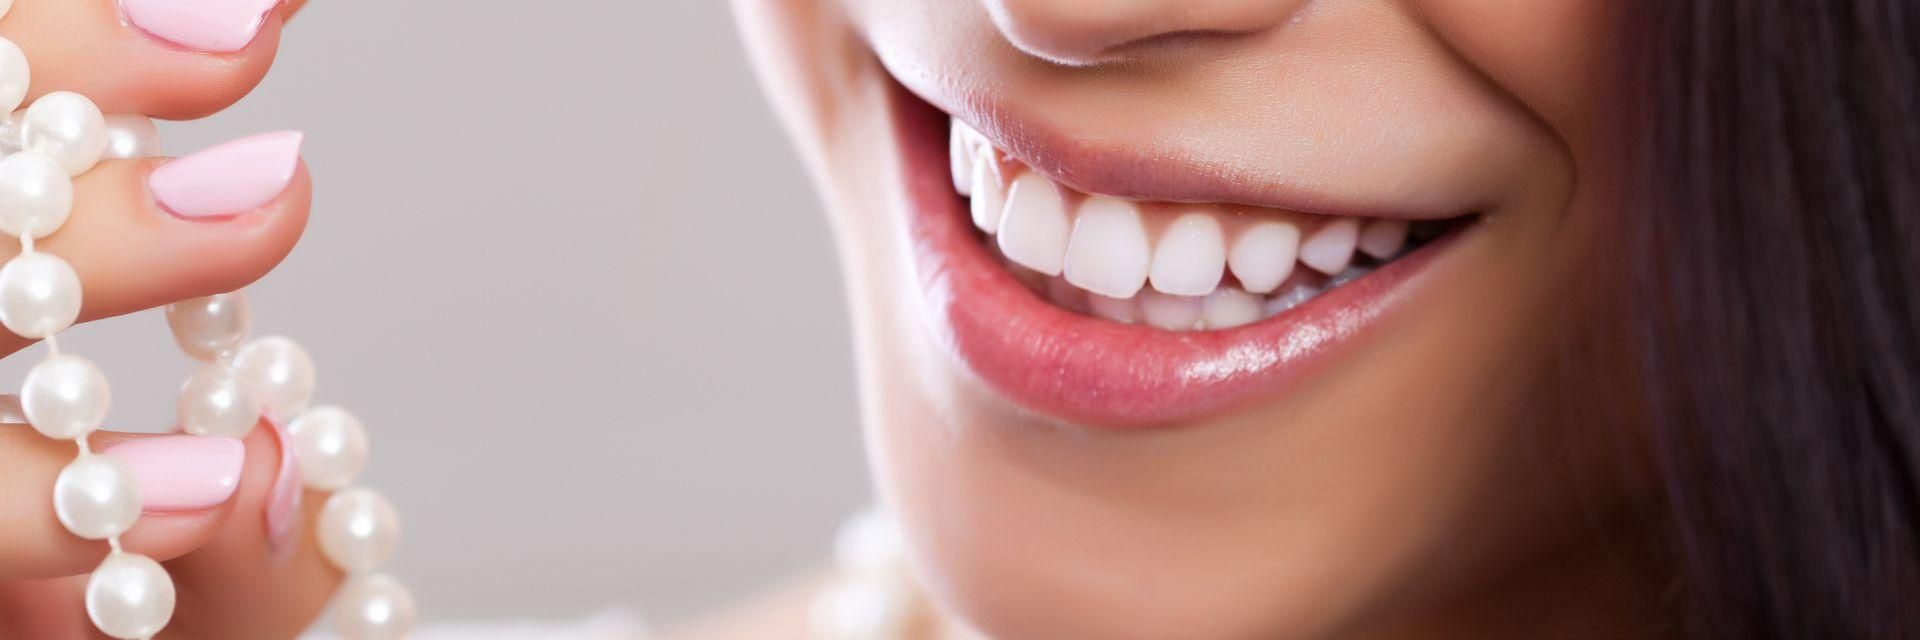 Bleaching - So erhalten Sie strahlend weiße Zähne